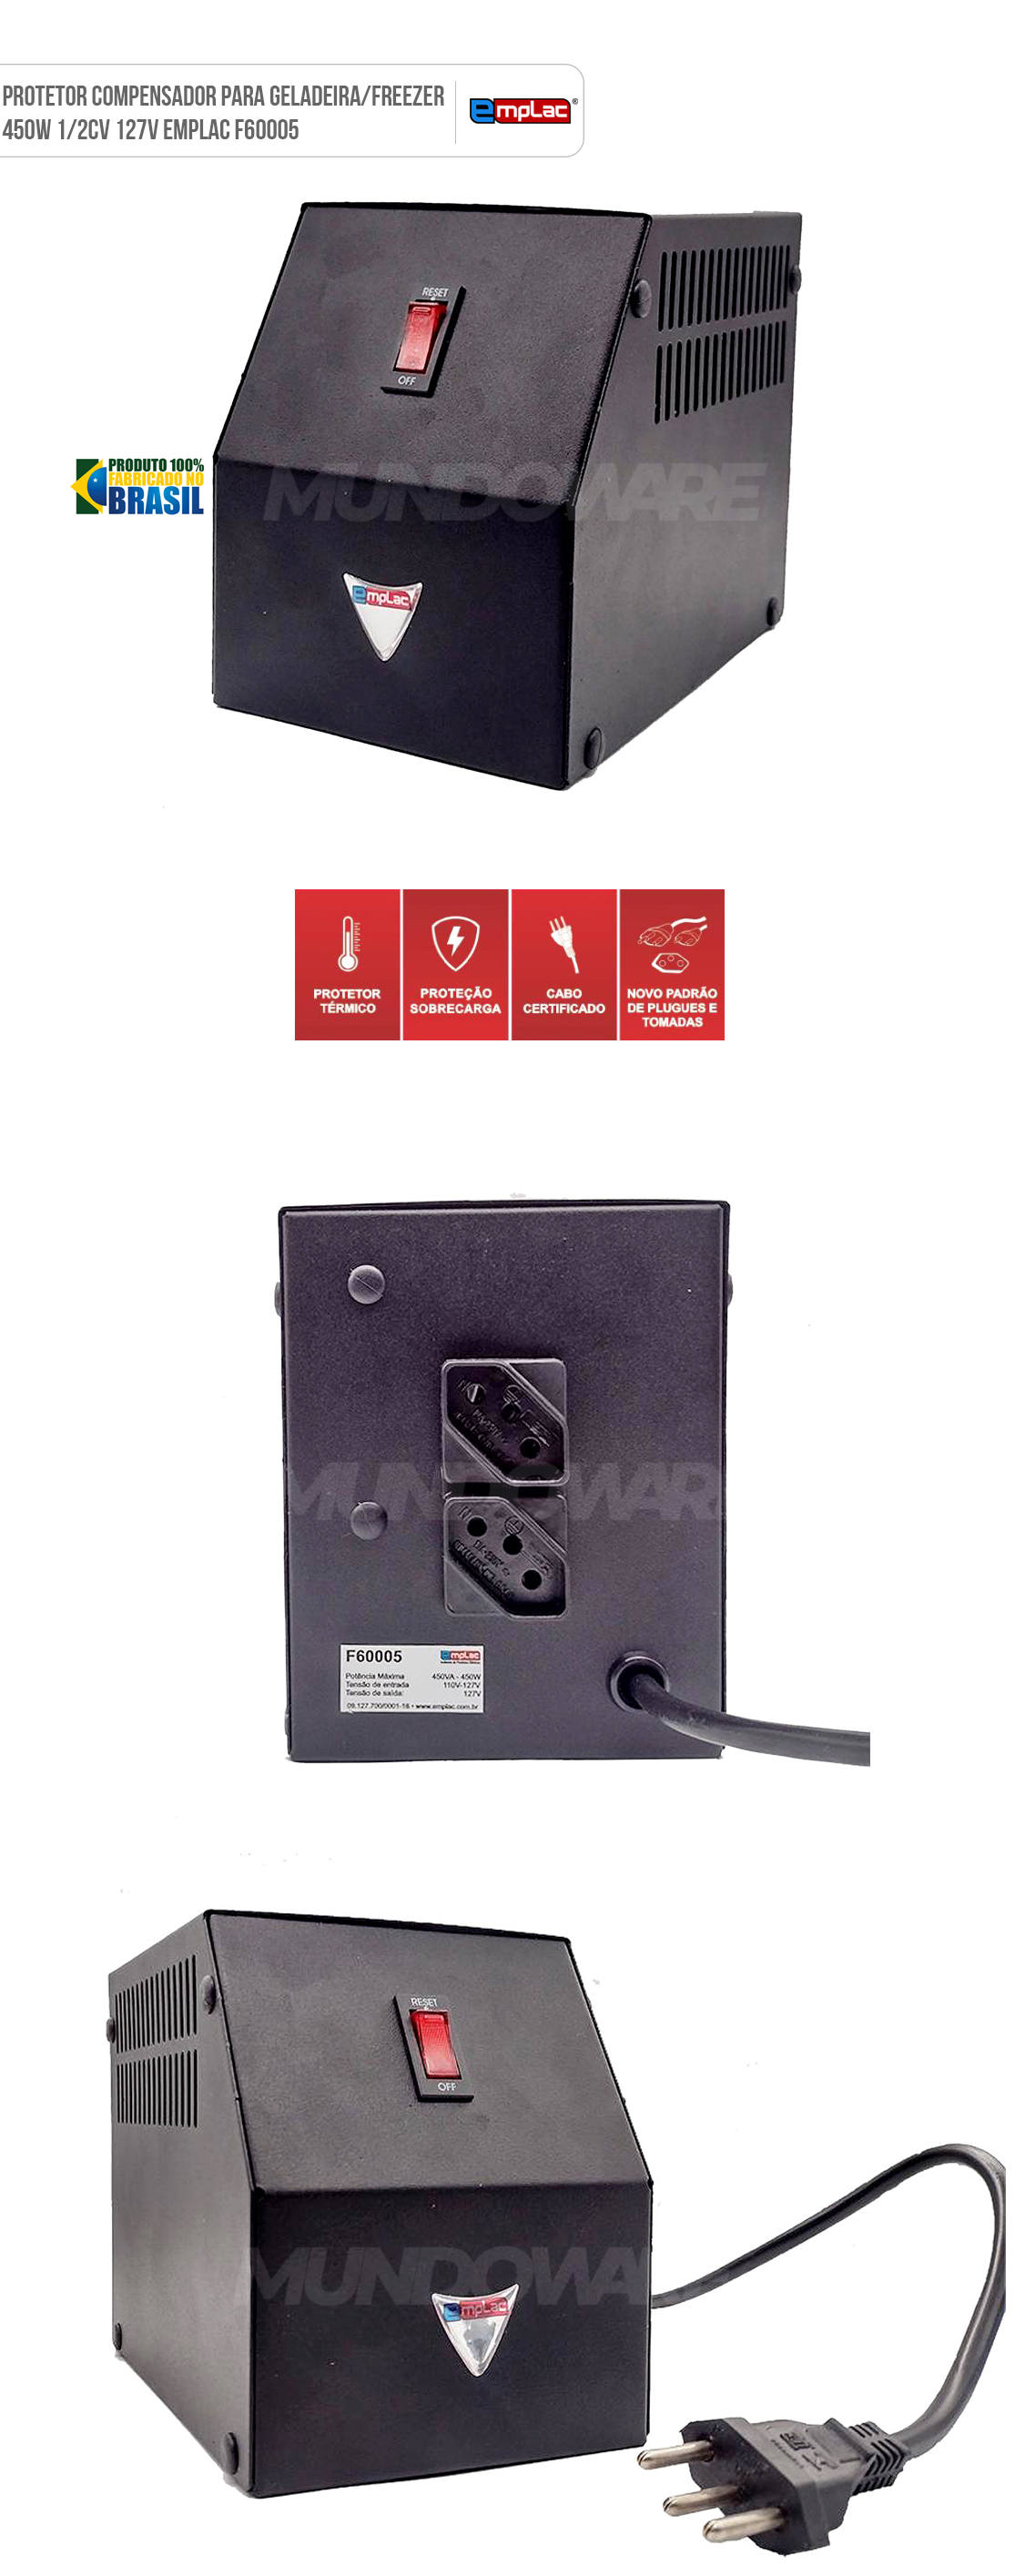 Protetor Compensador para Geladeira e Freezer 450W 1/2CV 127V Cabo 1 Metro Certificado Emplac F60005